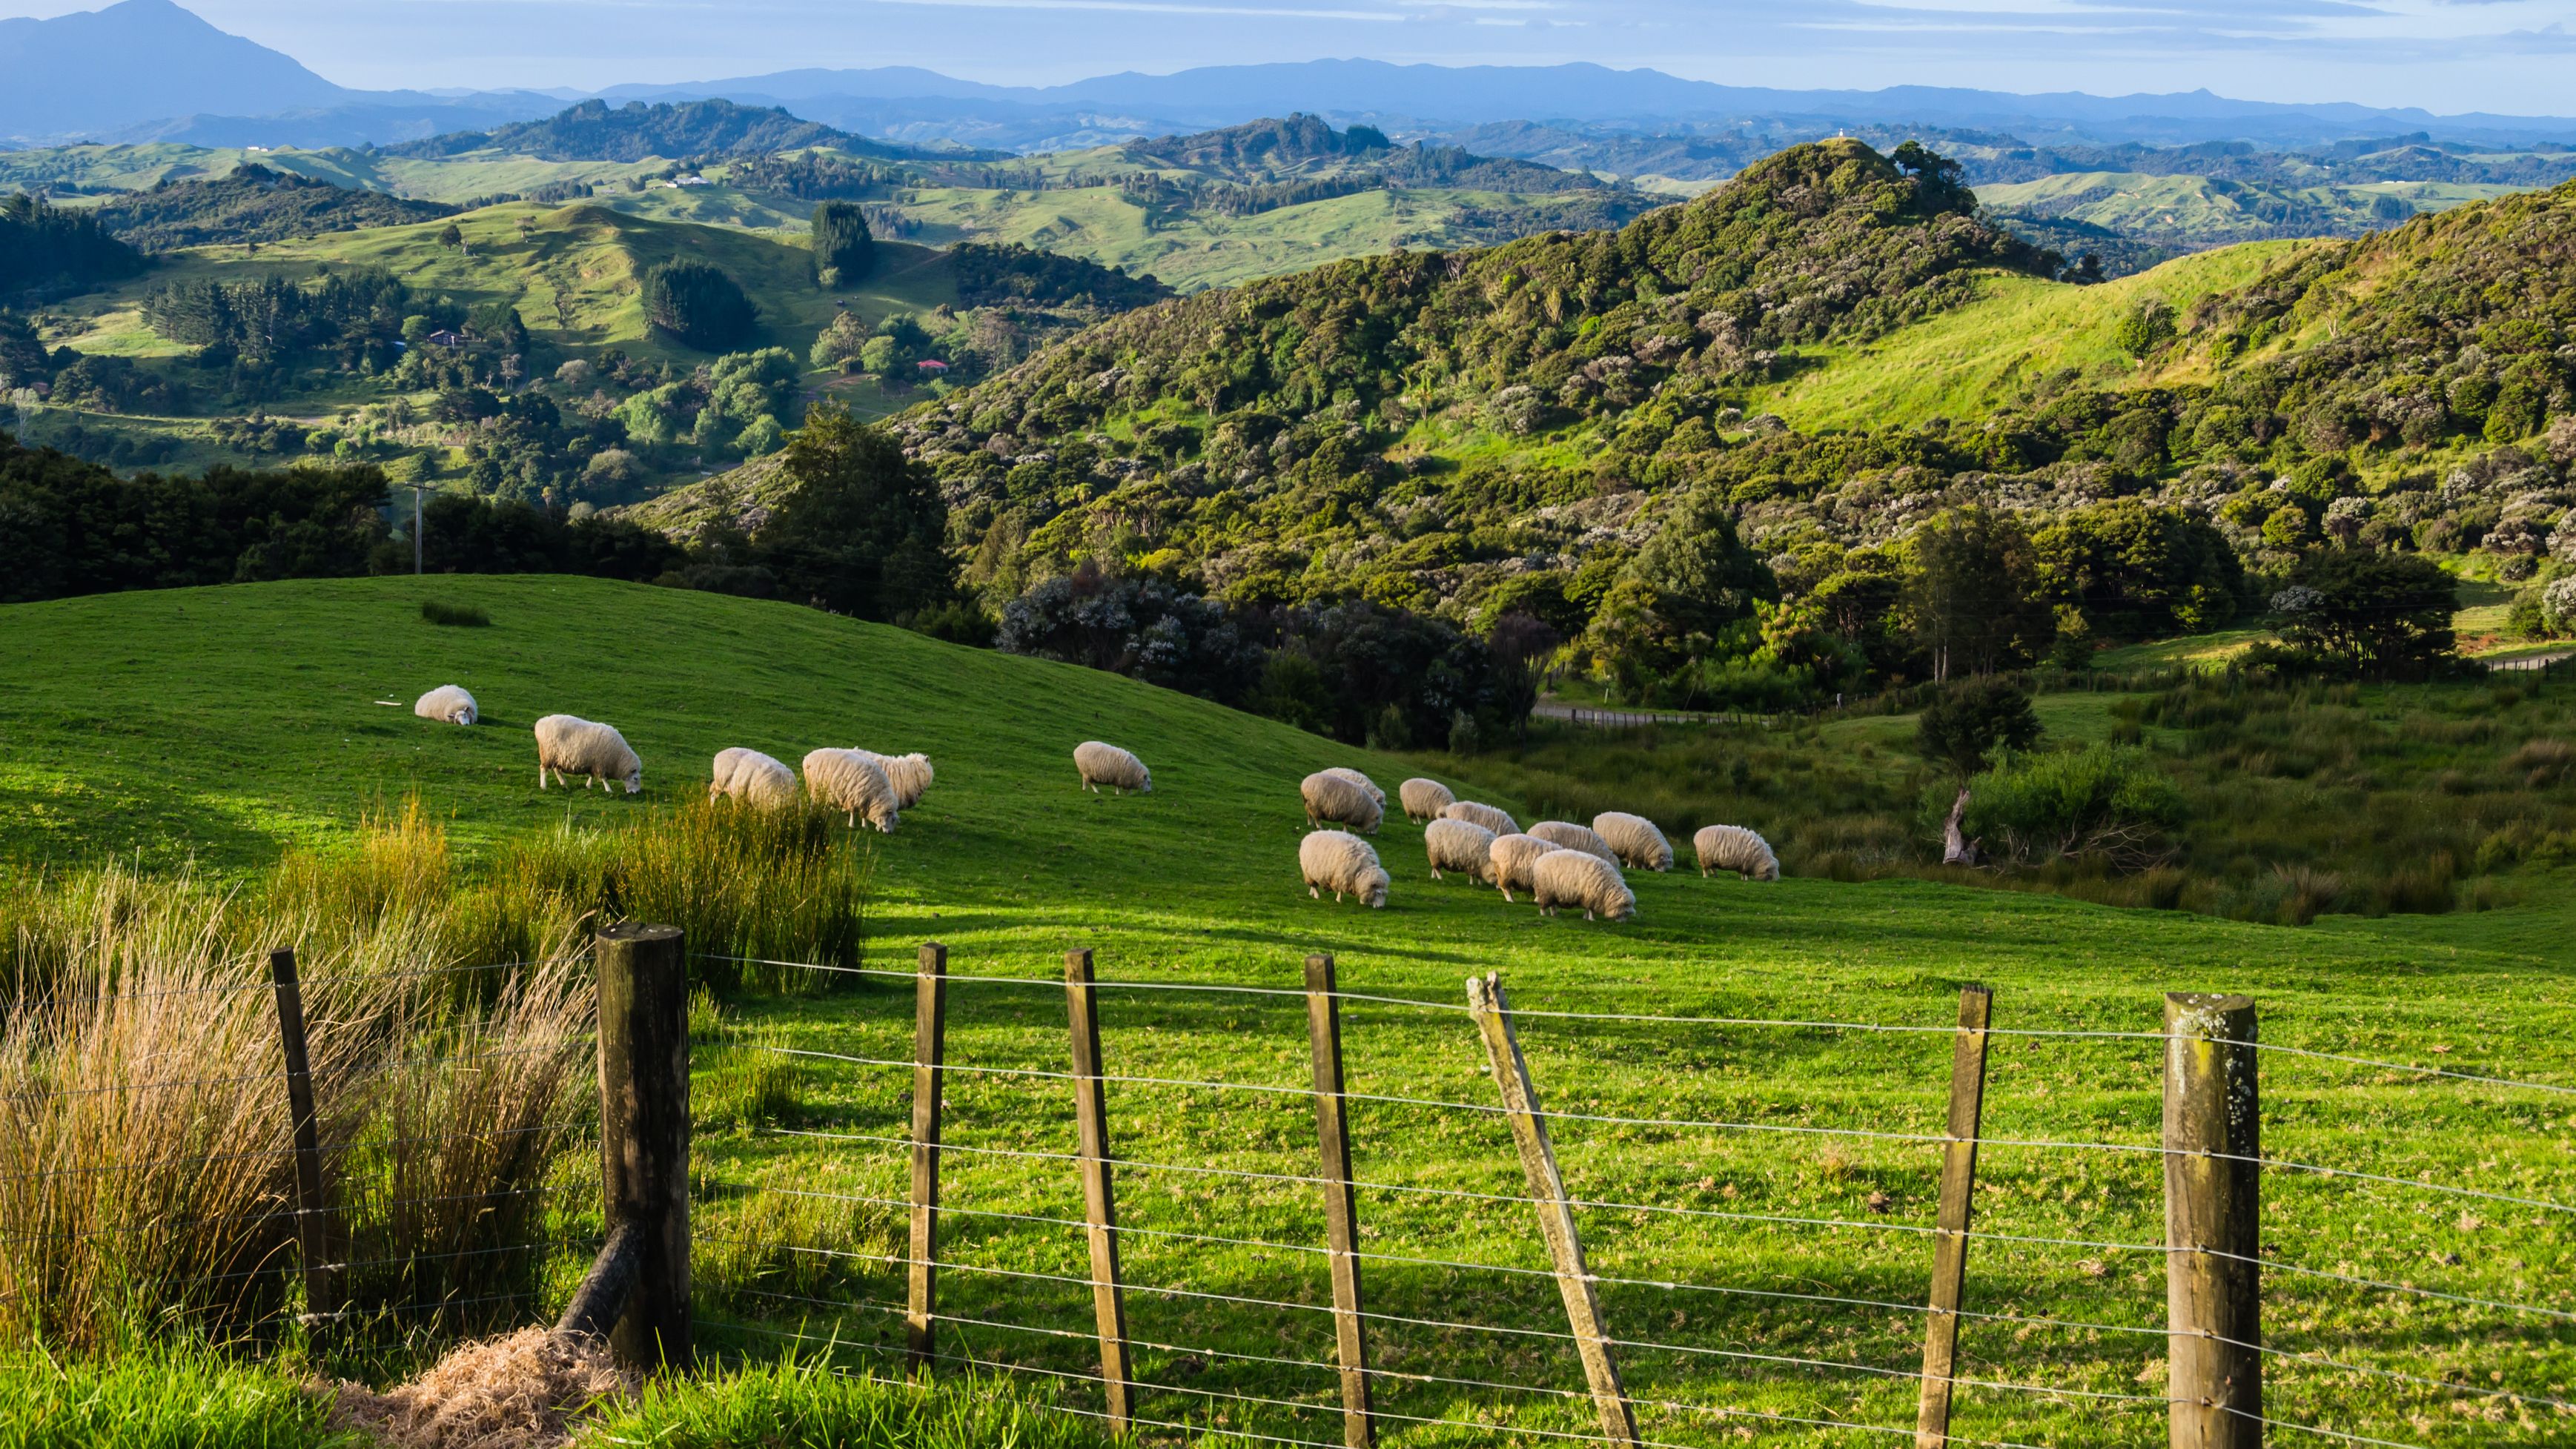 Blick ueber die gruene Huegellandschaft Neuseelands mit grasenden Schafen